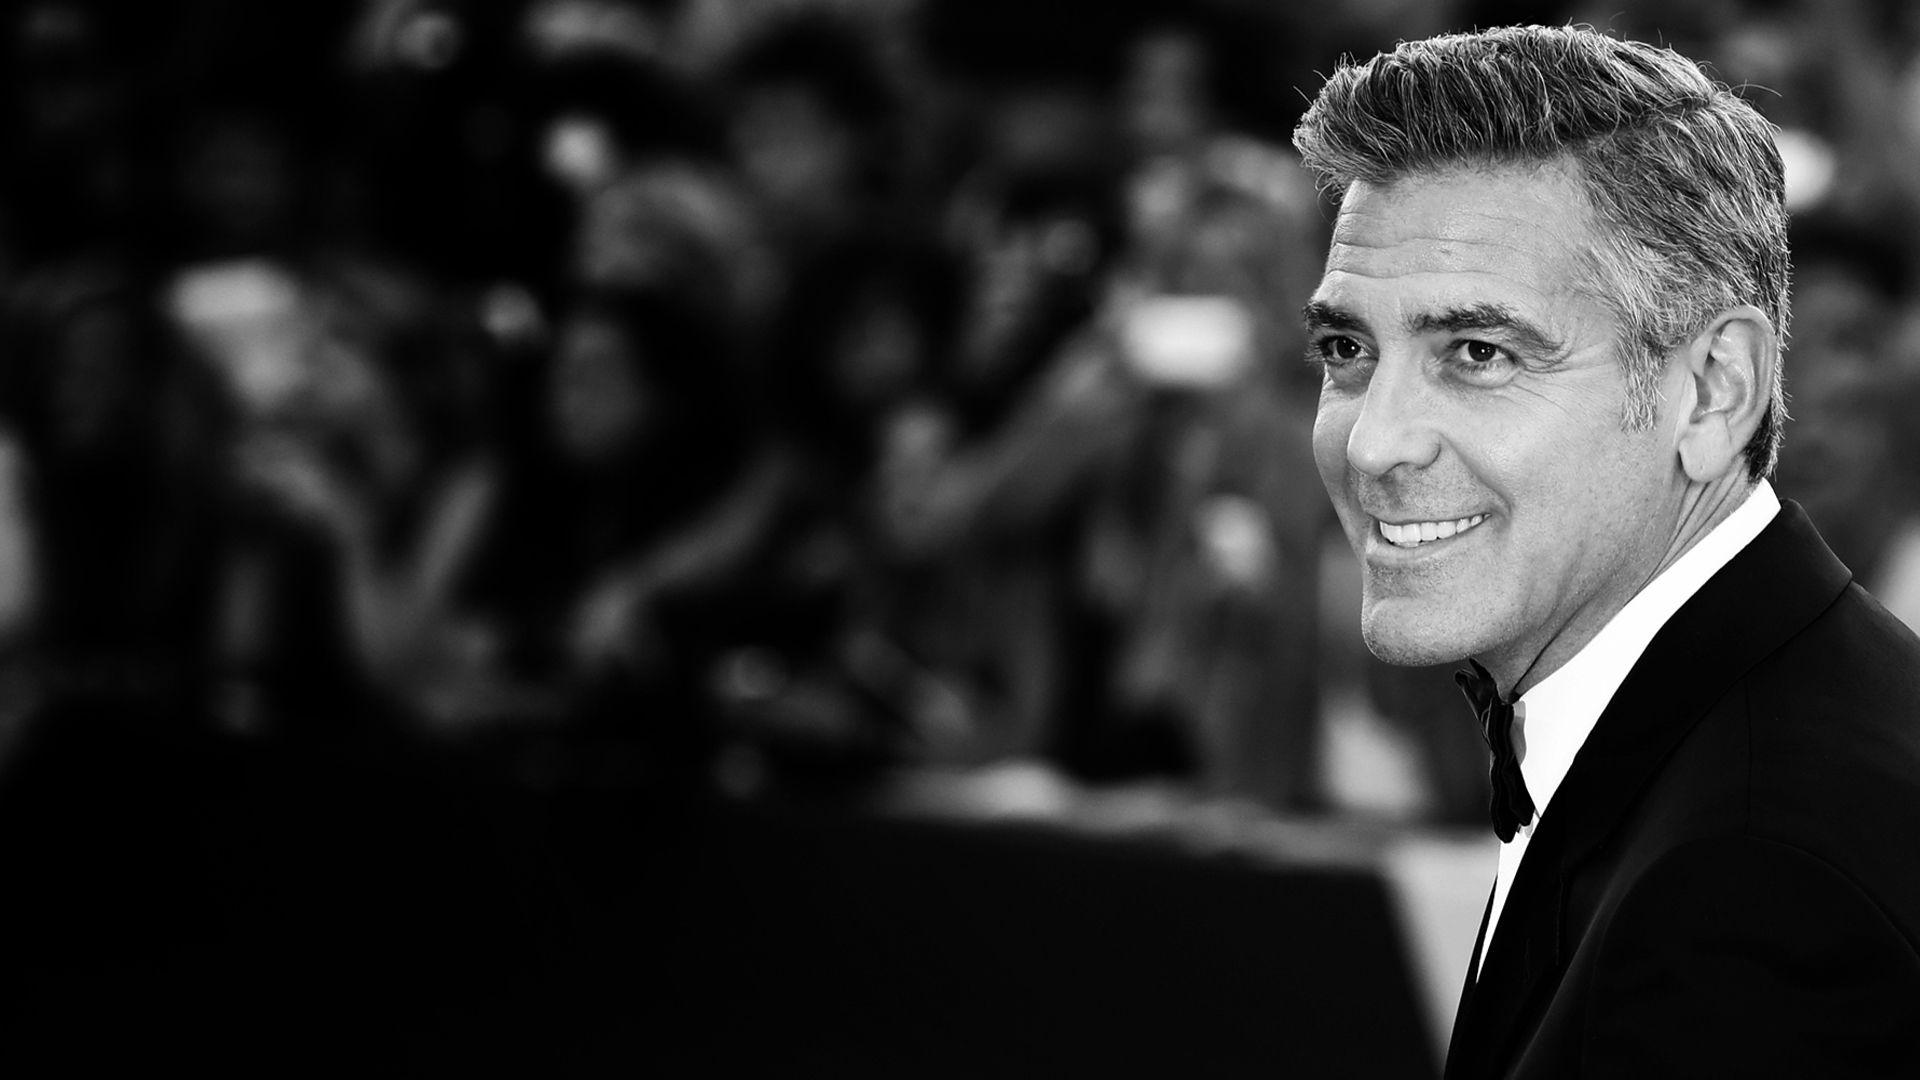 George Clooney Wallpaper, Custom HD 46 George Clooney Wallpaper